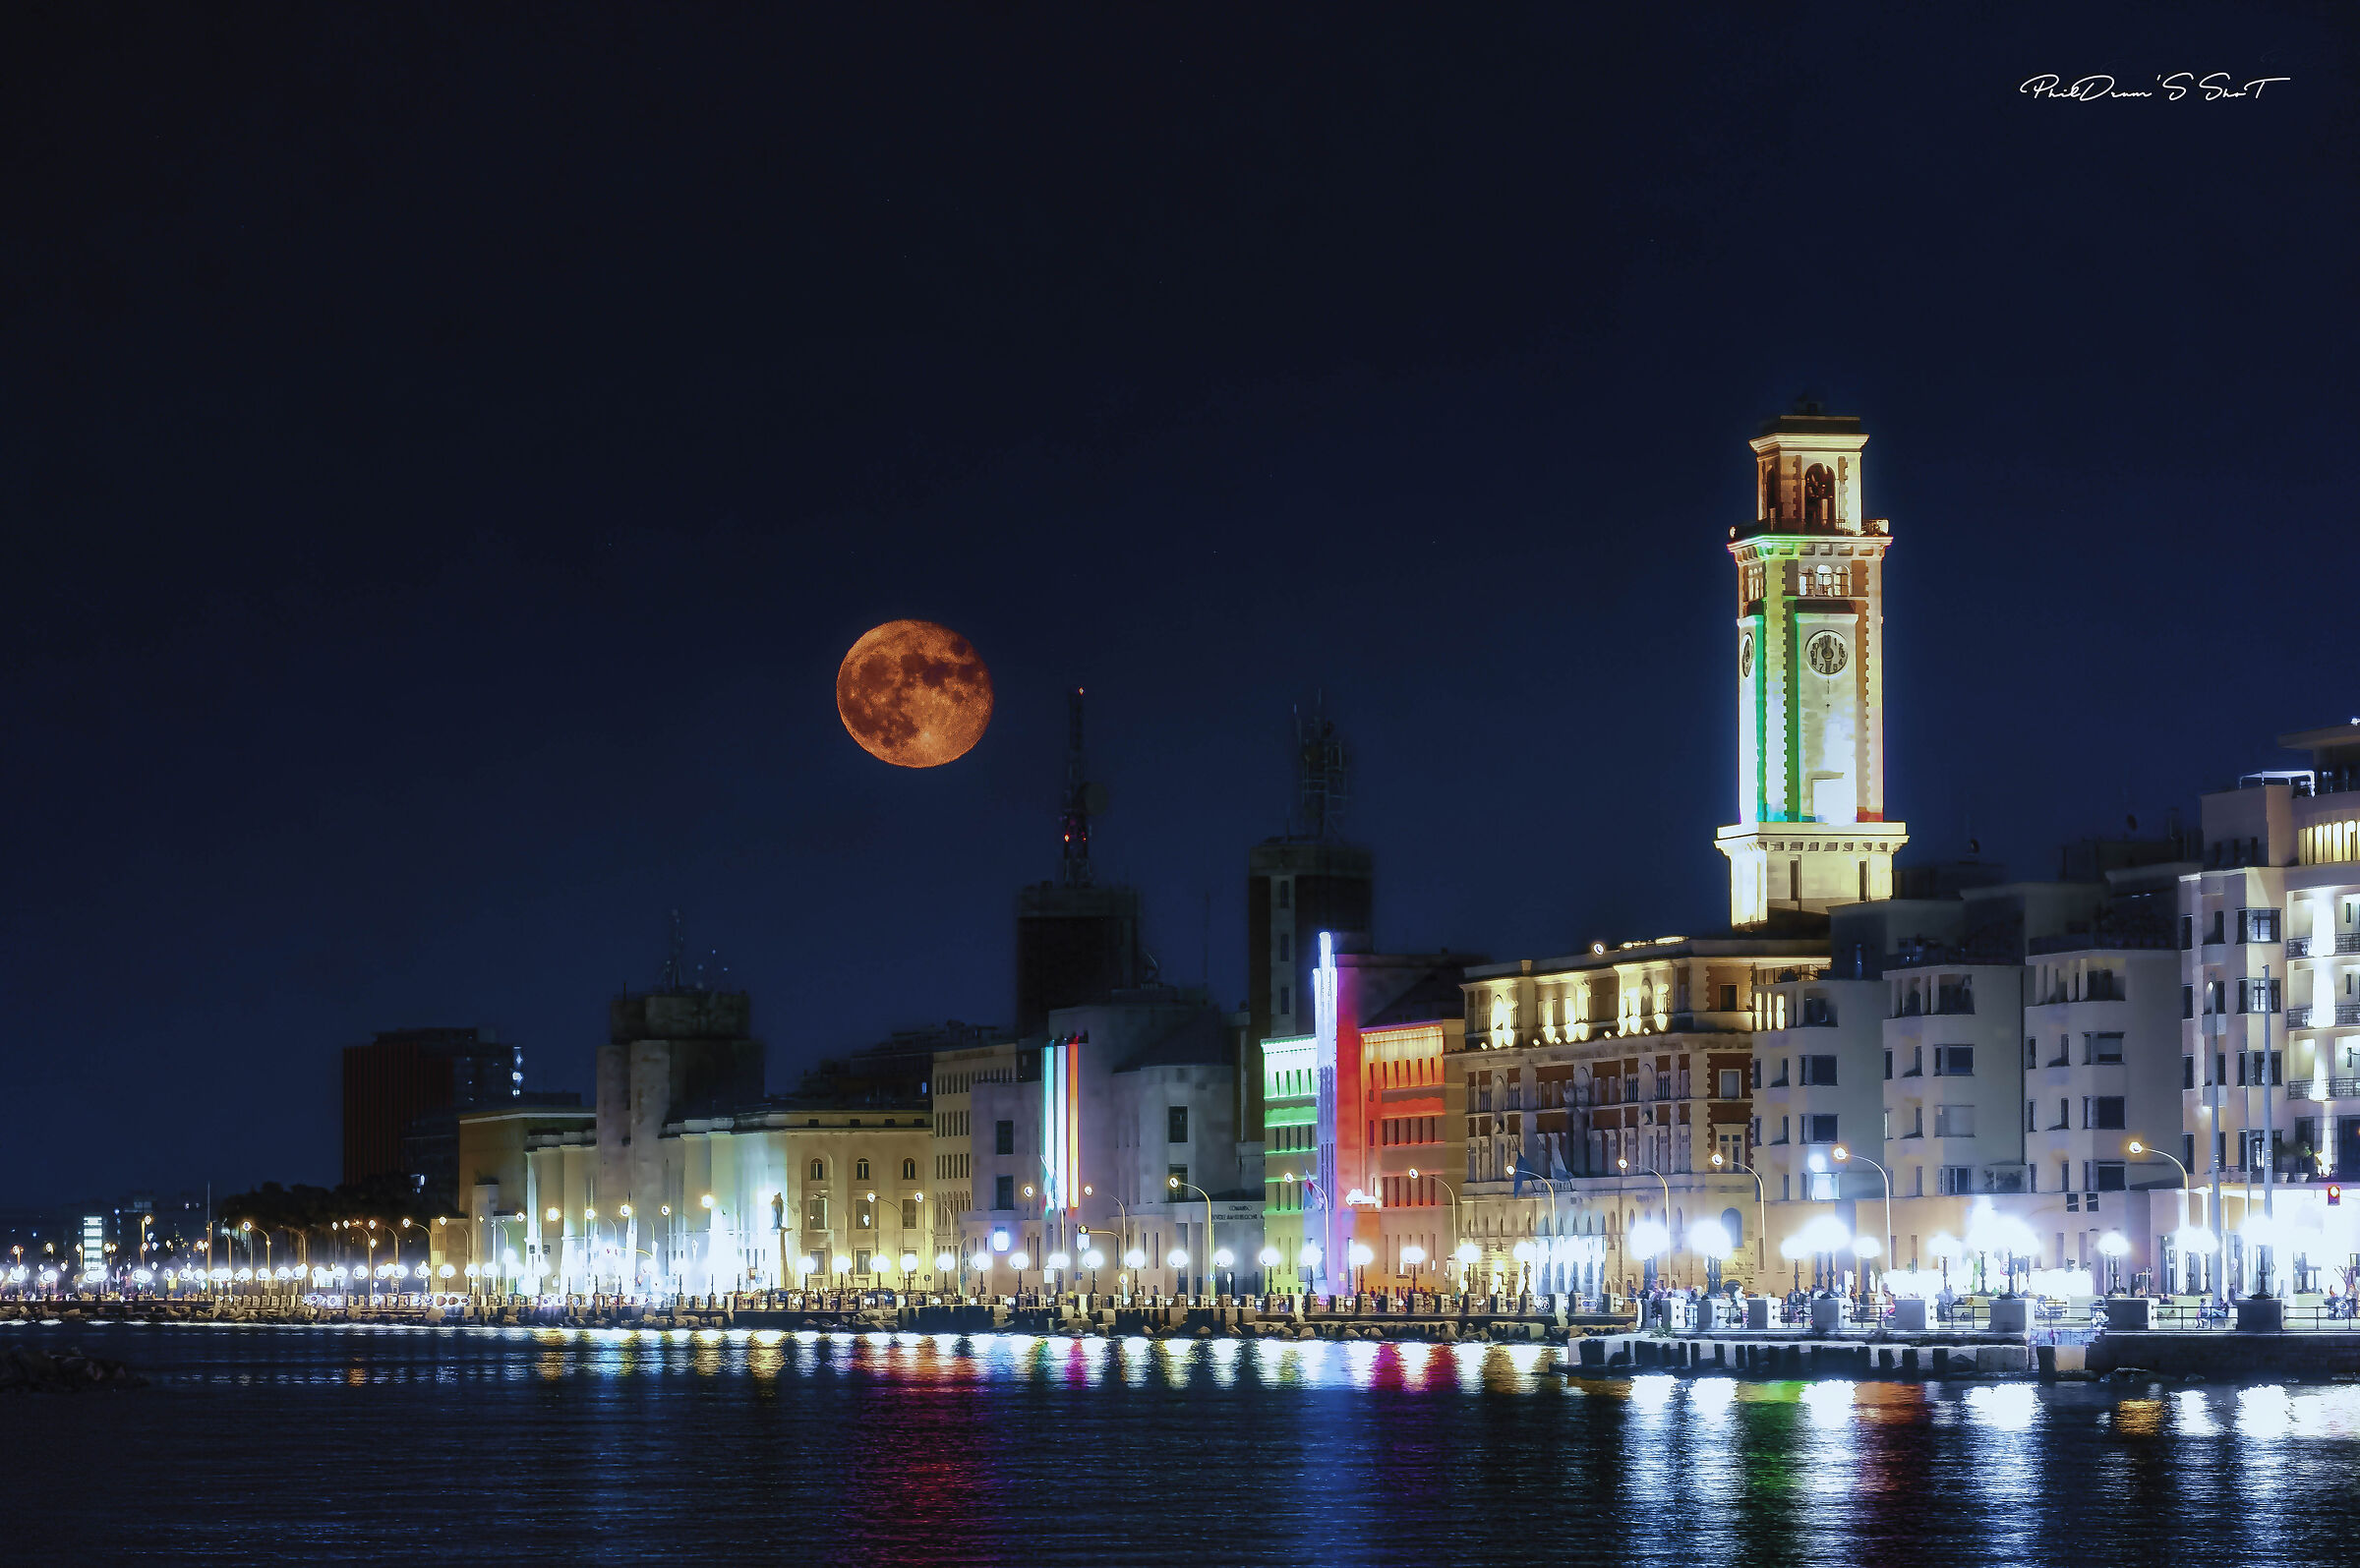 Full moon on bari's waterfront...